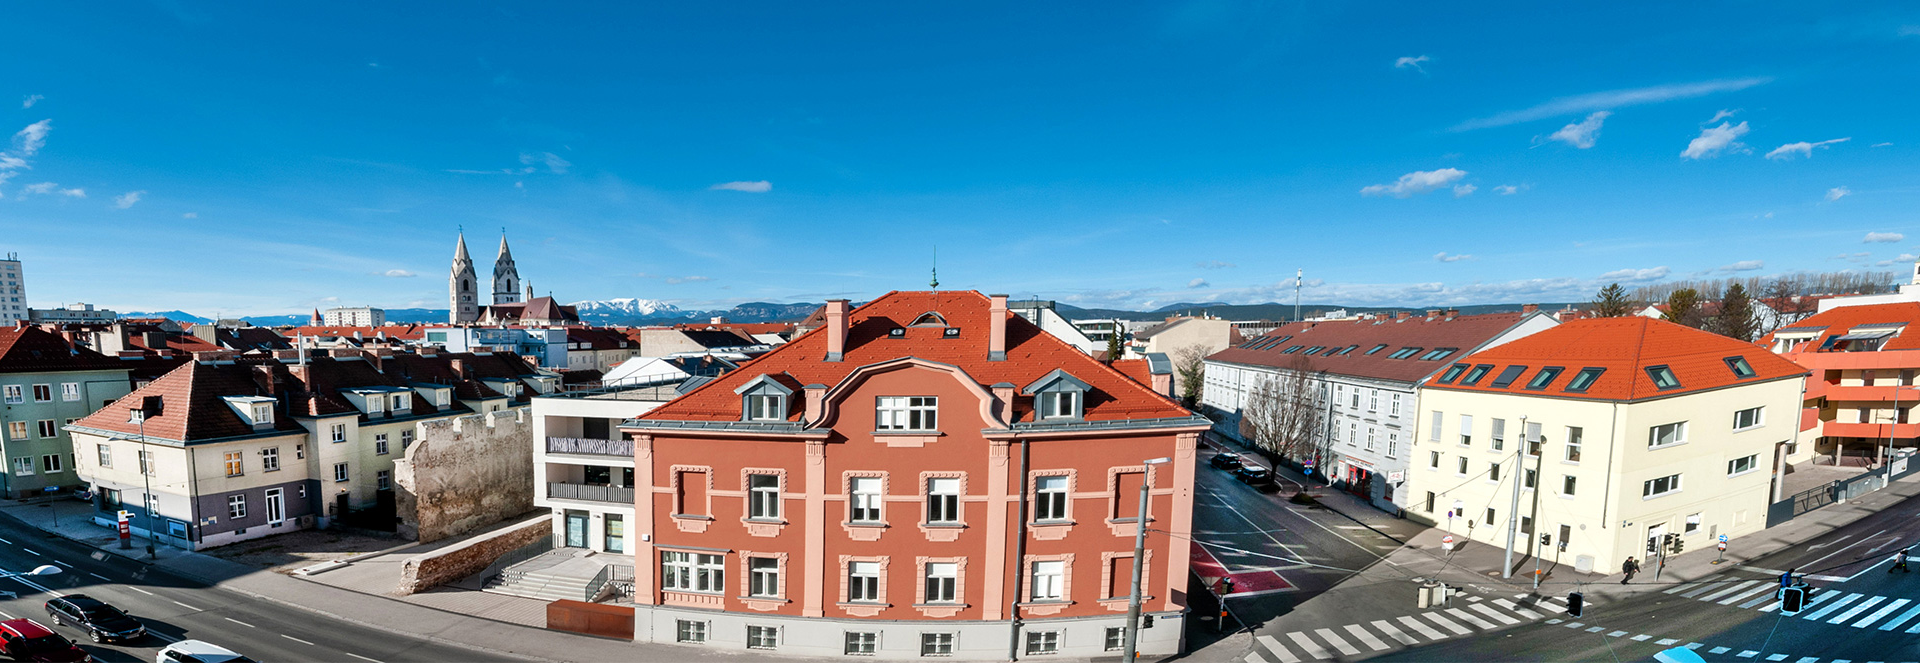 Globus Real Estate - Makler für Immobilien in Wiener Neustadt